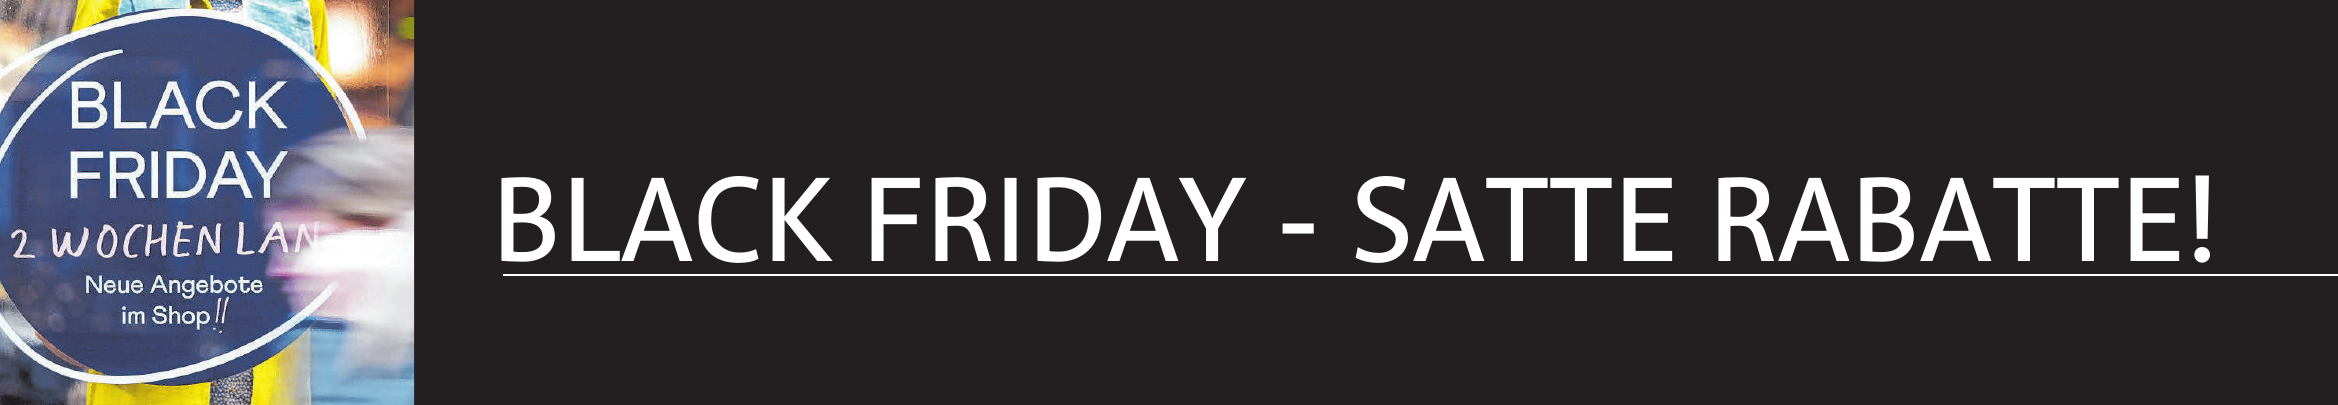 Heißt der „Black Friday“ so, weil danach die Händler schwarze Zahlen schreiben?